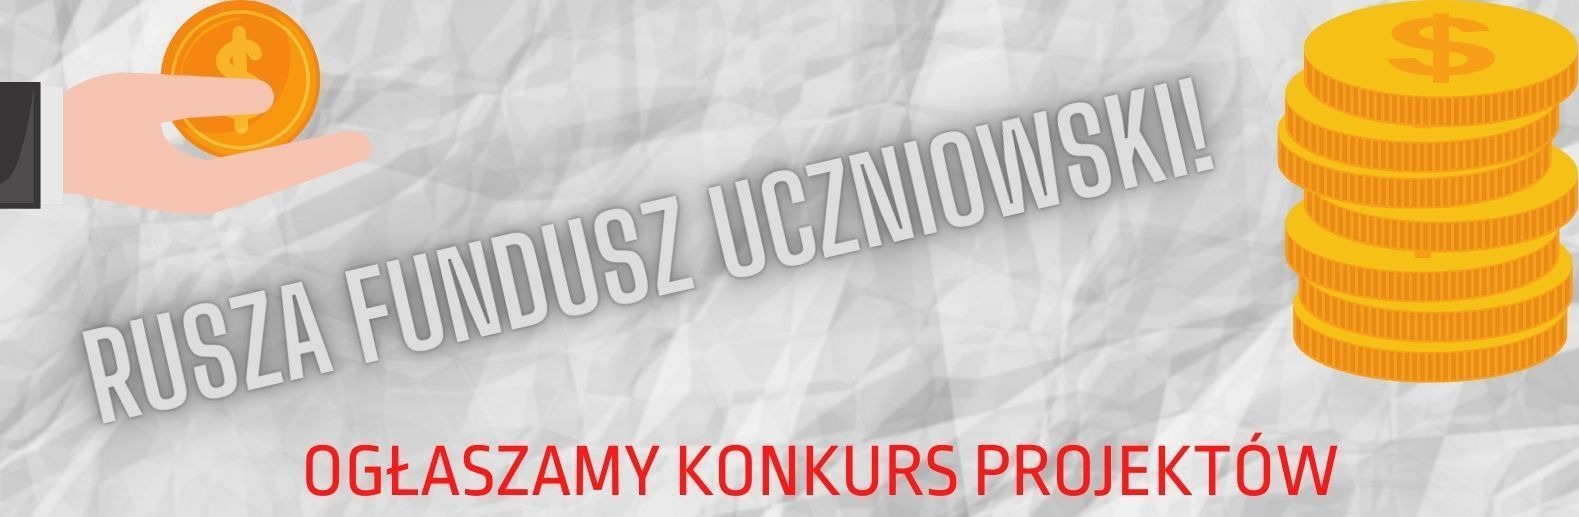 Fundusz Uczniowski - Obrazek 1